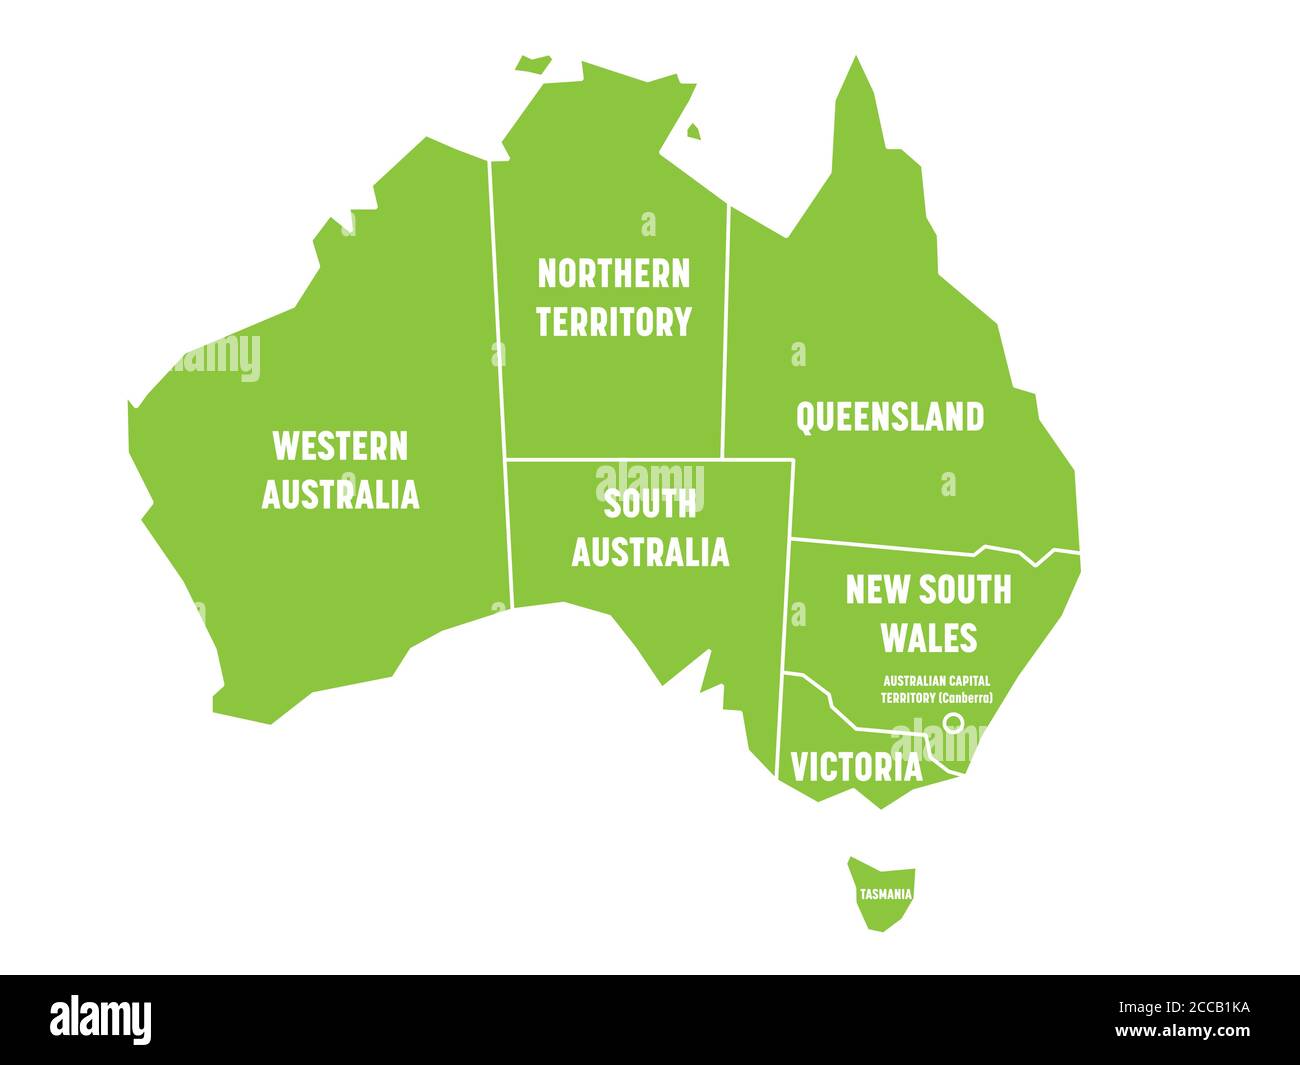 Carte simplifiée de l'Australie divisée en États et territoires. Carte plate verte avec bordures blanches et étiquettes blanches. Illustration vectorielle. Illustration de Vecteur